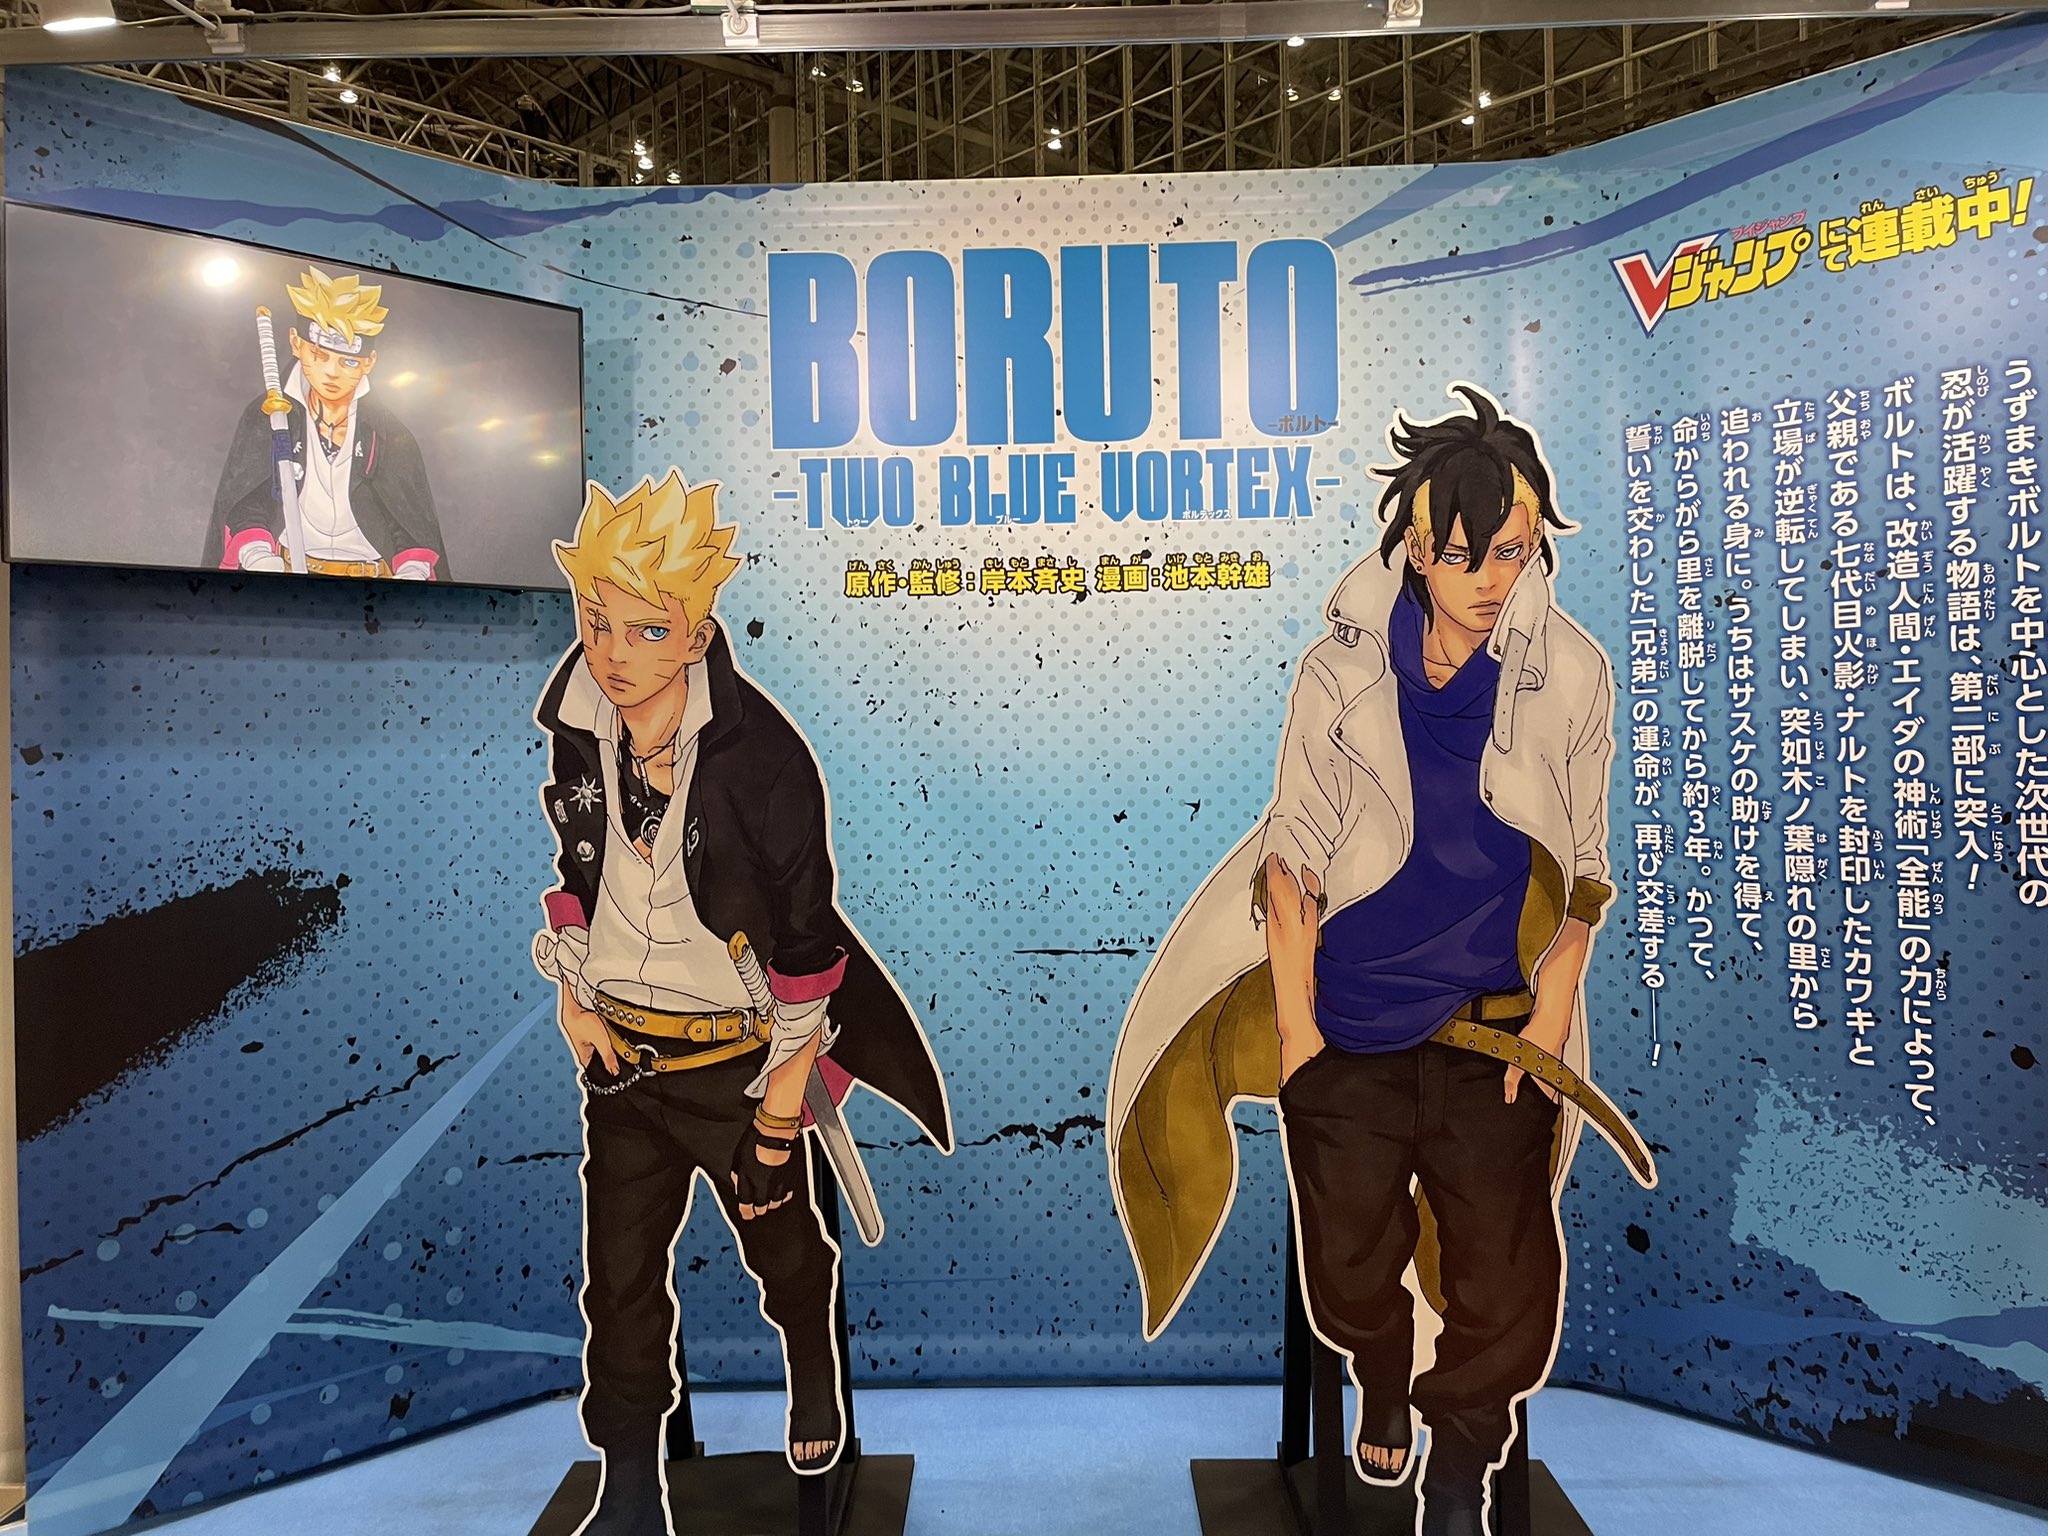 Portal Boruto Brasil on X: 🫶🏼🥺  QUE AMOR! Trecho do emocionante  diálogo entre Boruto e Naruto com dublagem PT-BR. (📽: Yatogam1Oficial)  Novos episódios dublados em breve na Pluto TV BR.  /